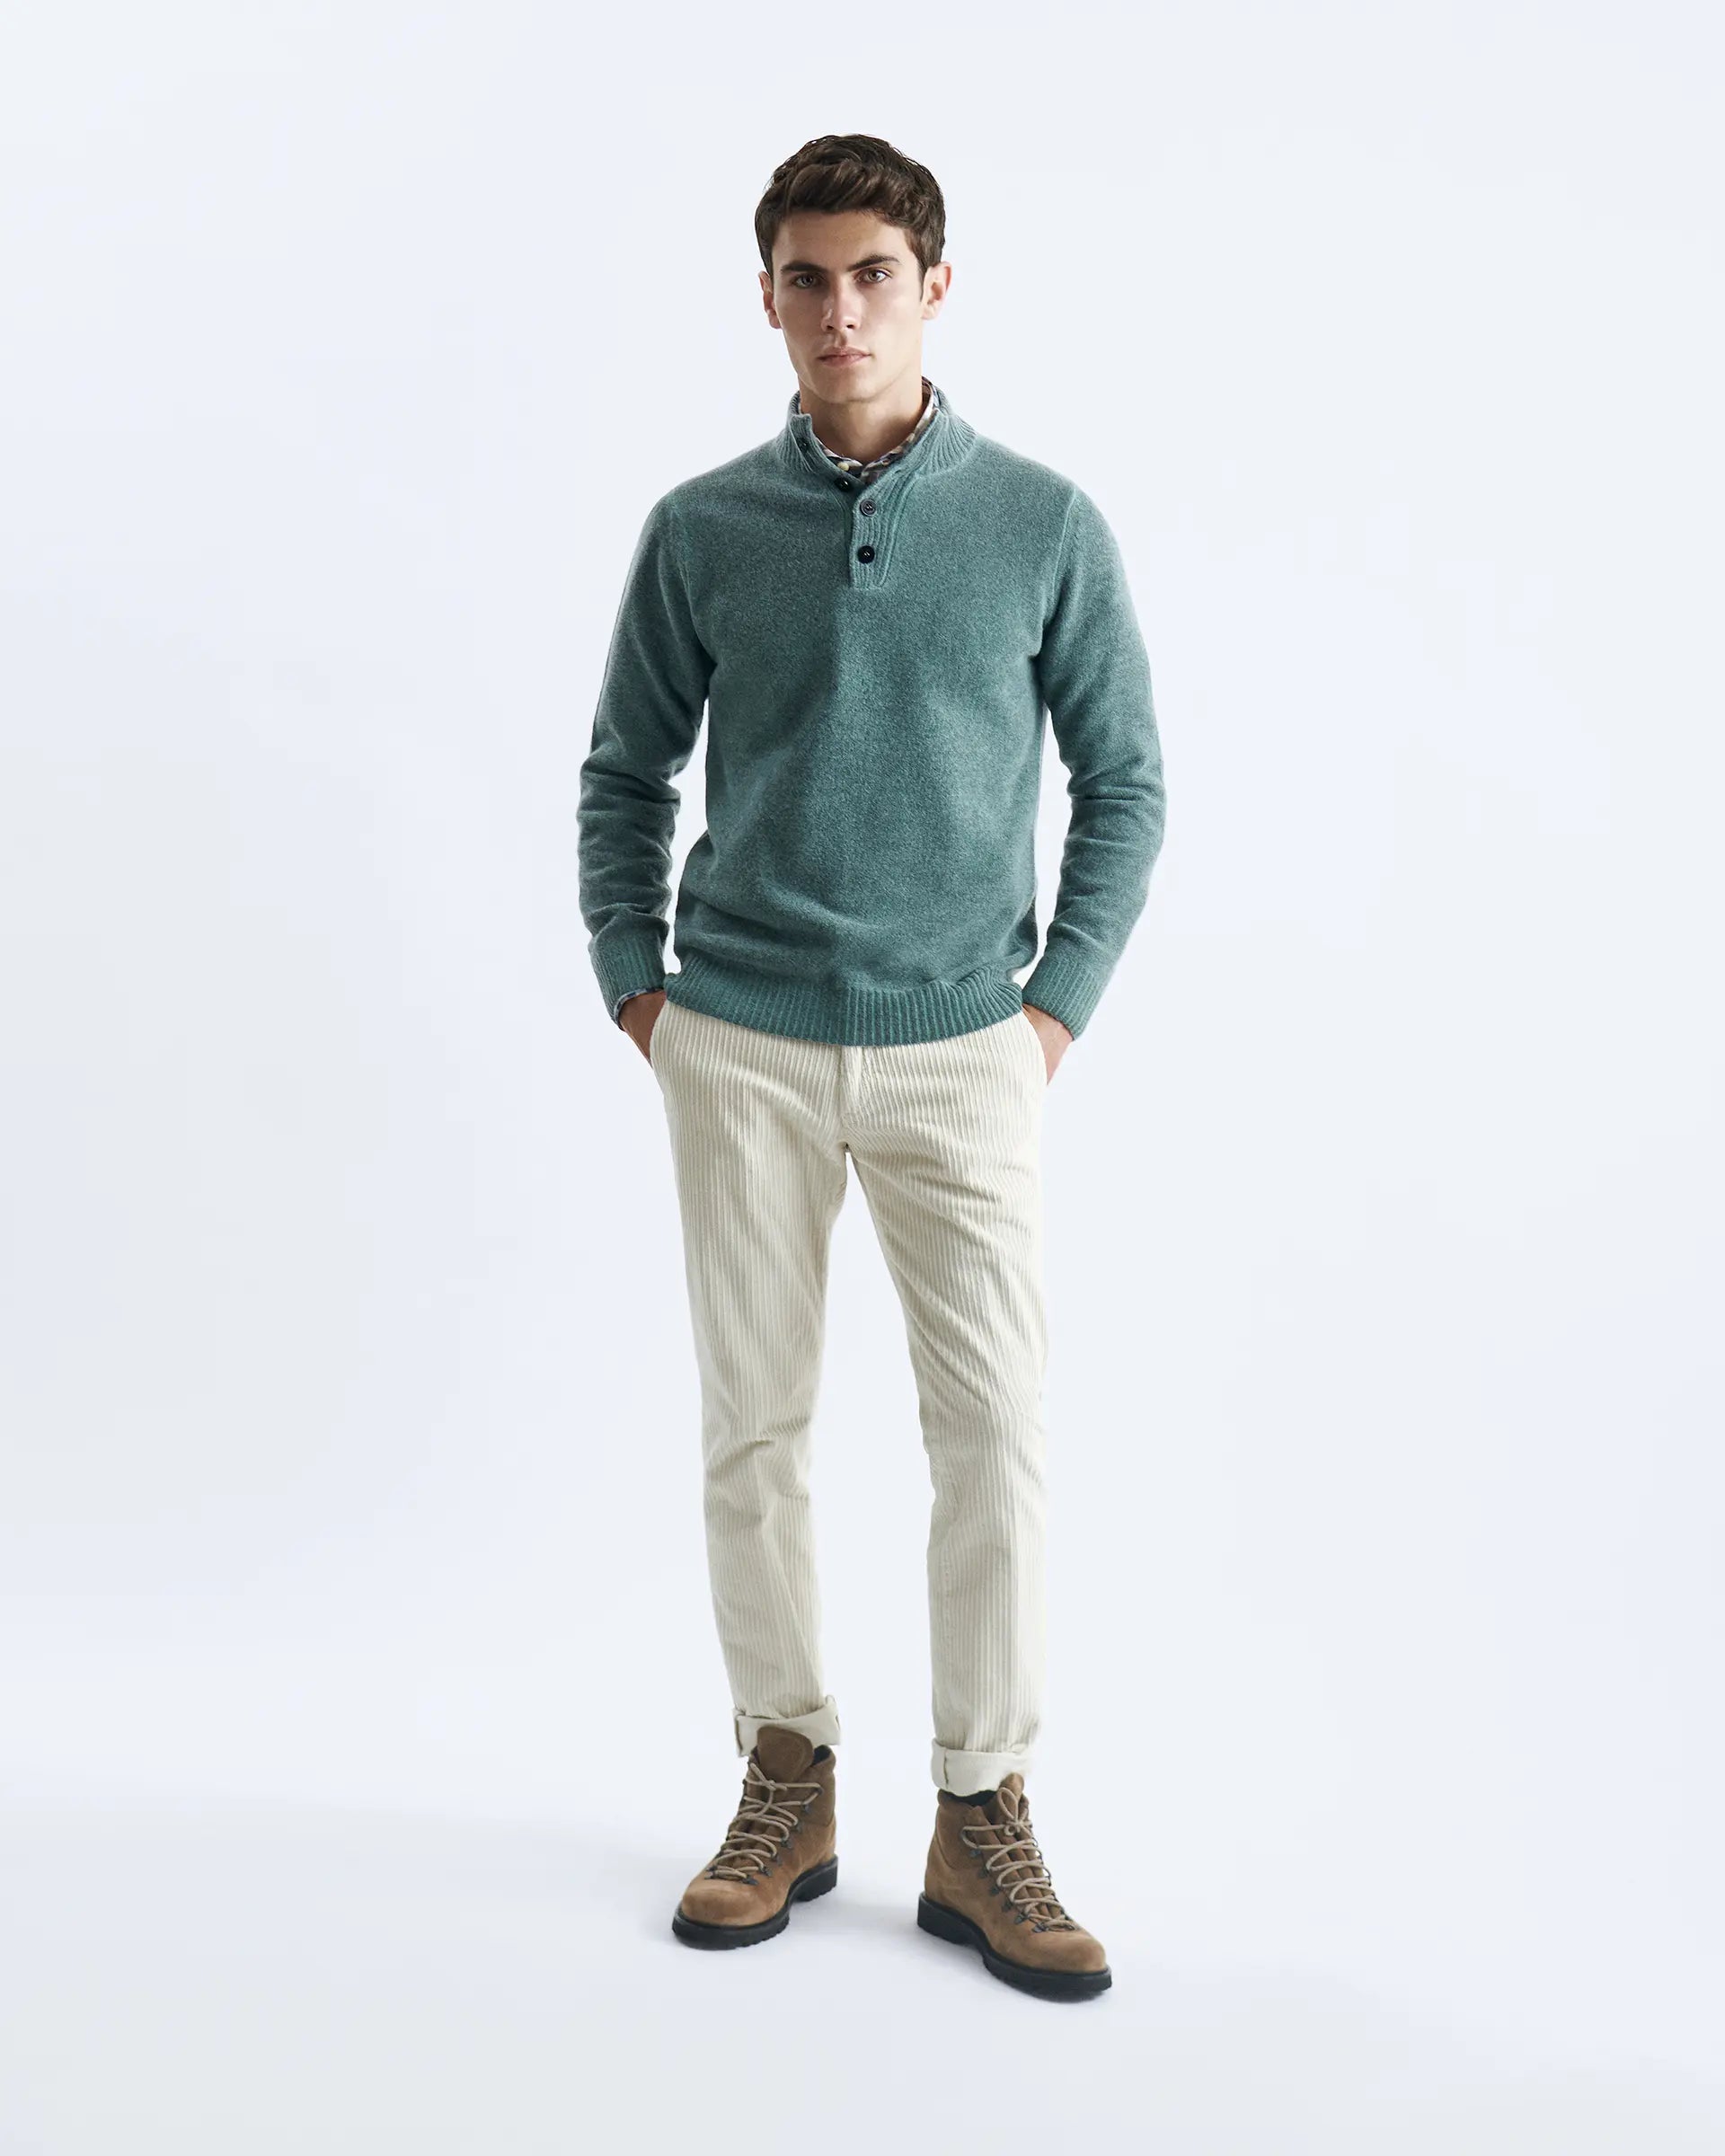 Green 4-Button Wool Blend Sweater - 7 Gauge